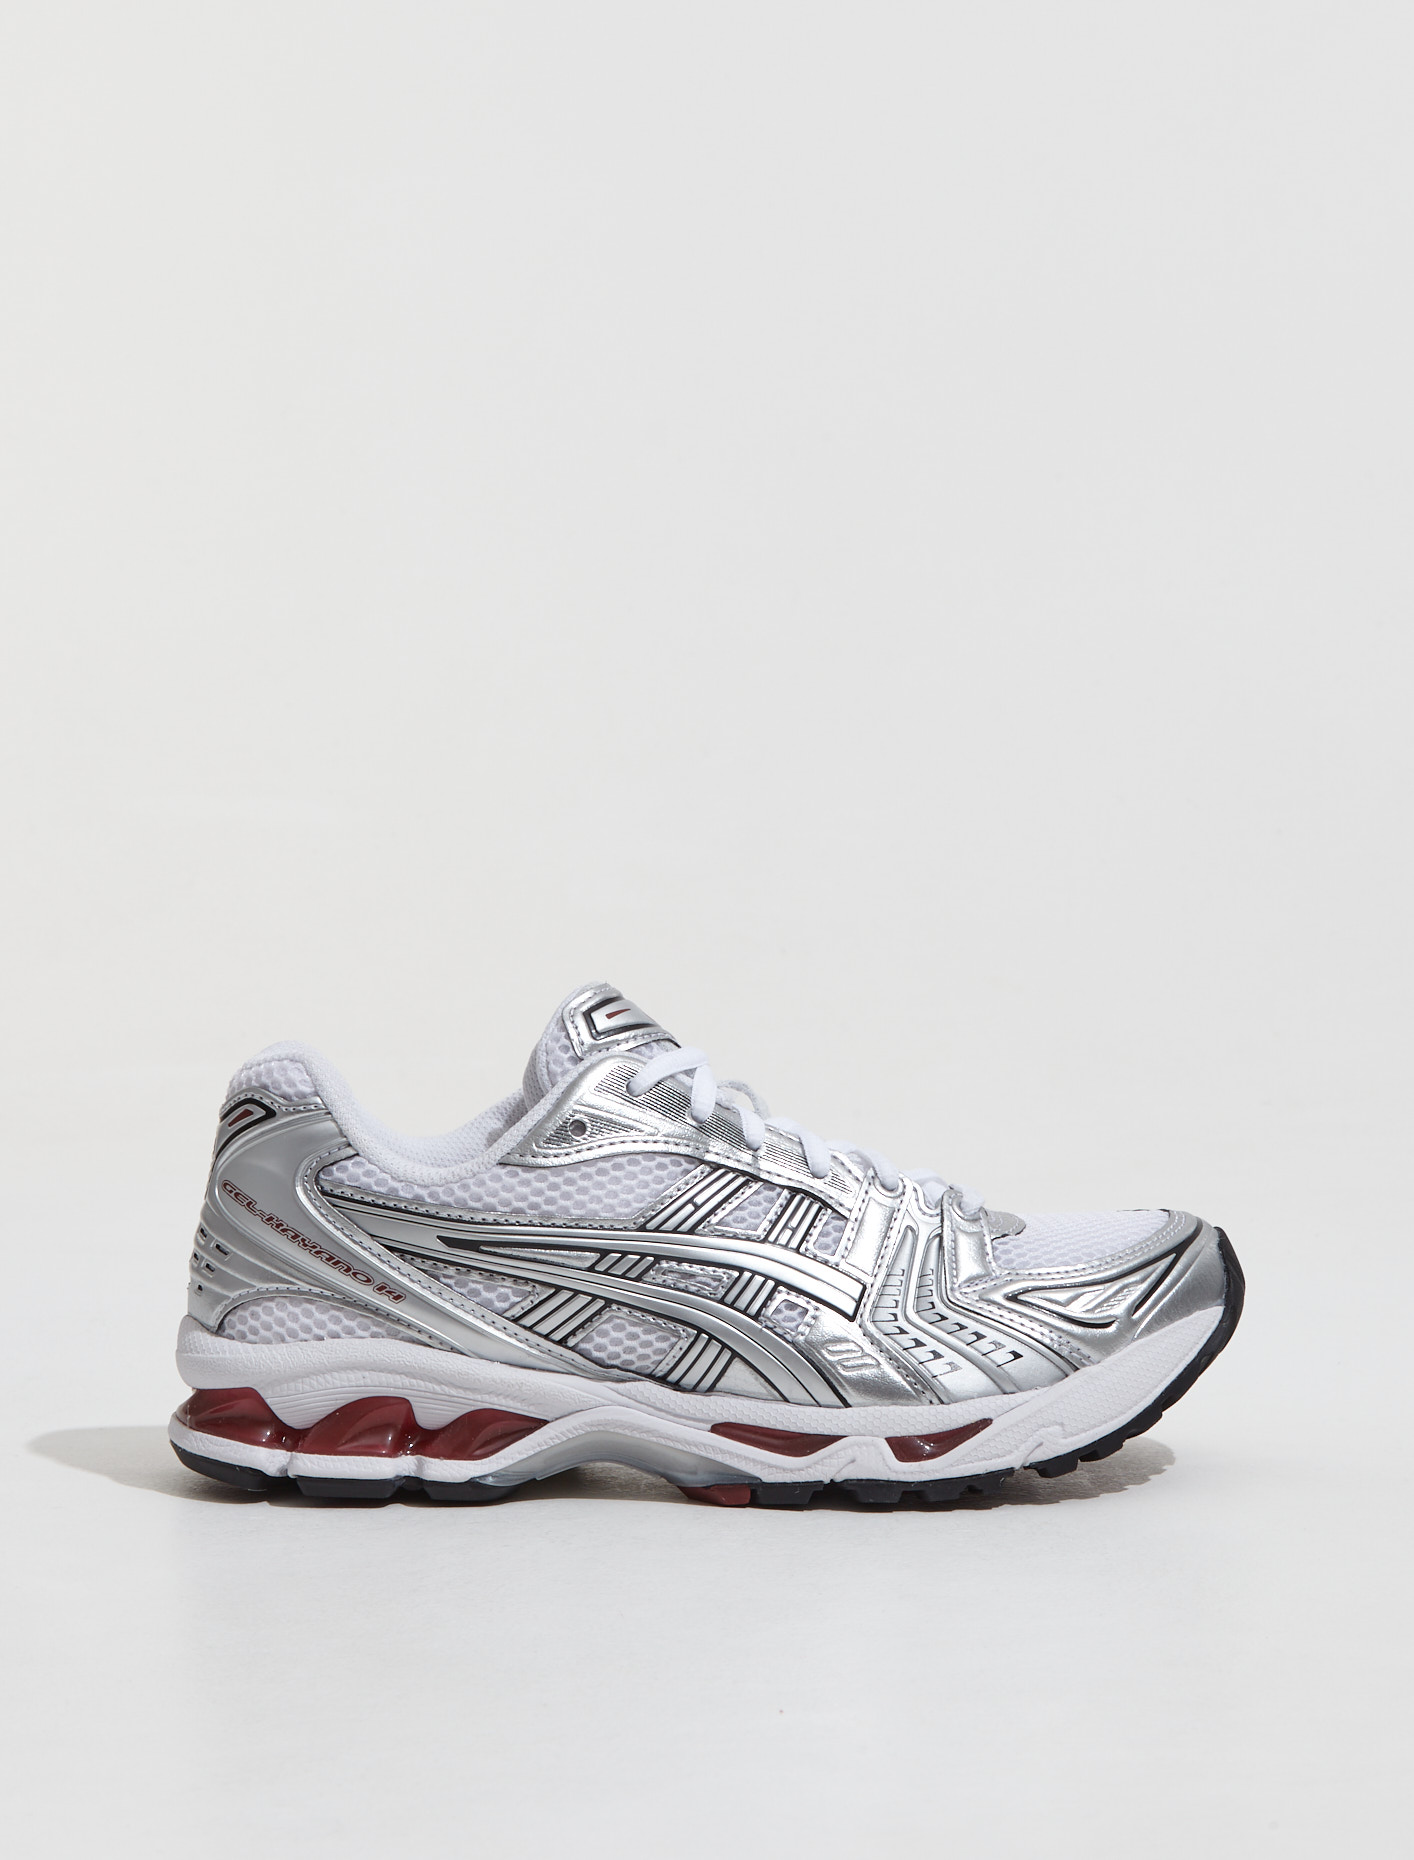 ASICS GEL-KAYANO 14 Sneaker in White & Pure Silver | Voo Store Berlin |  Worldwide Shipping